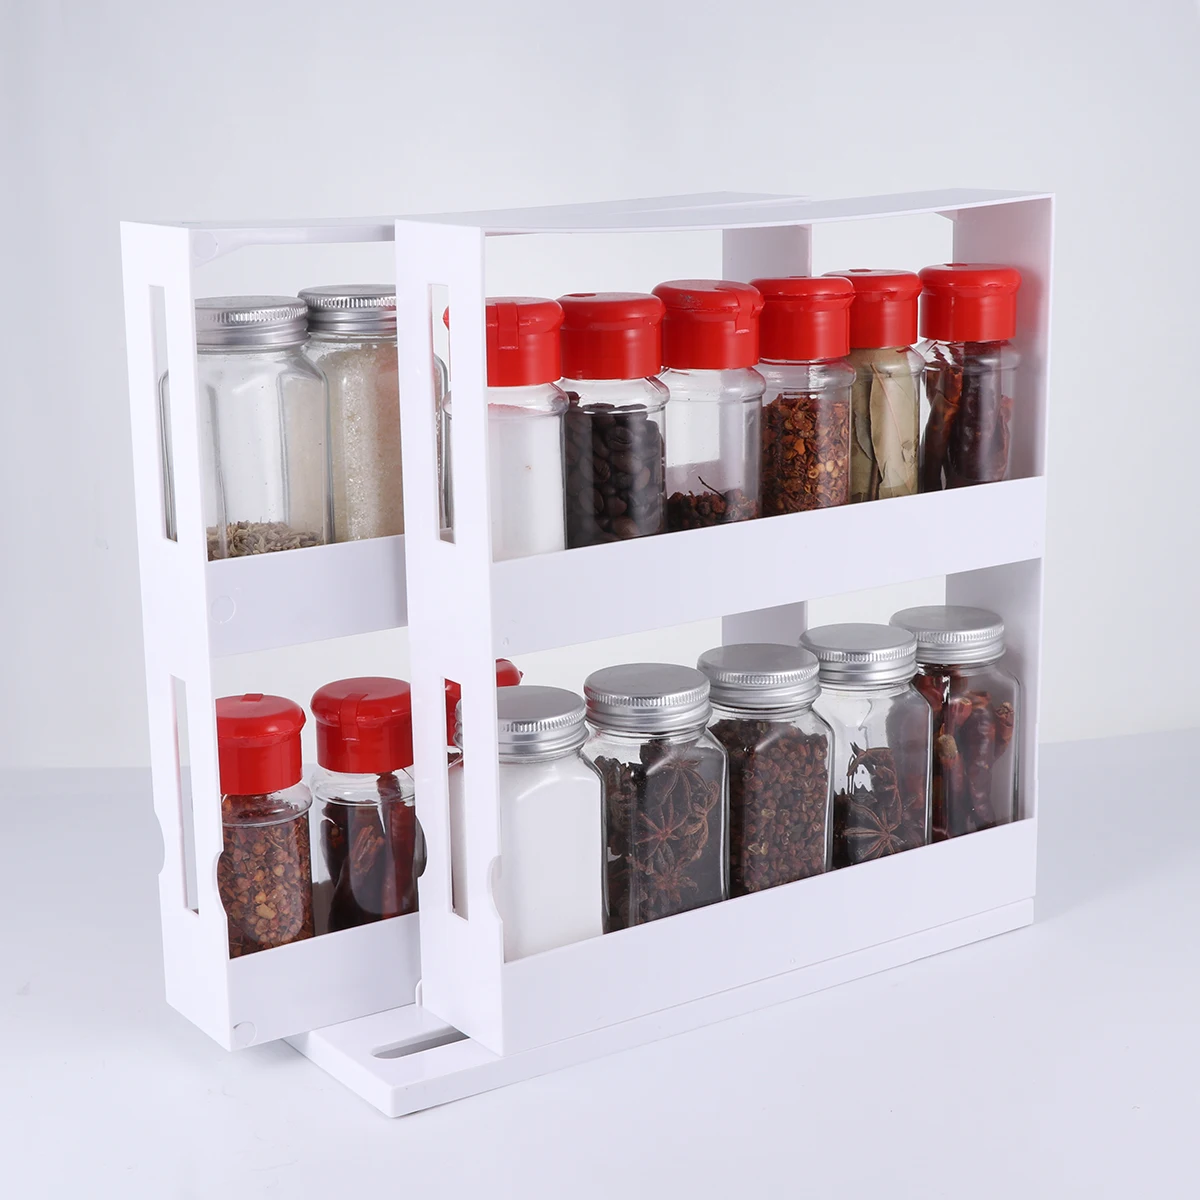 2 Layer Storage Organize Spices Jar Bottle